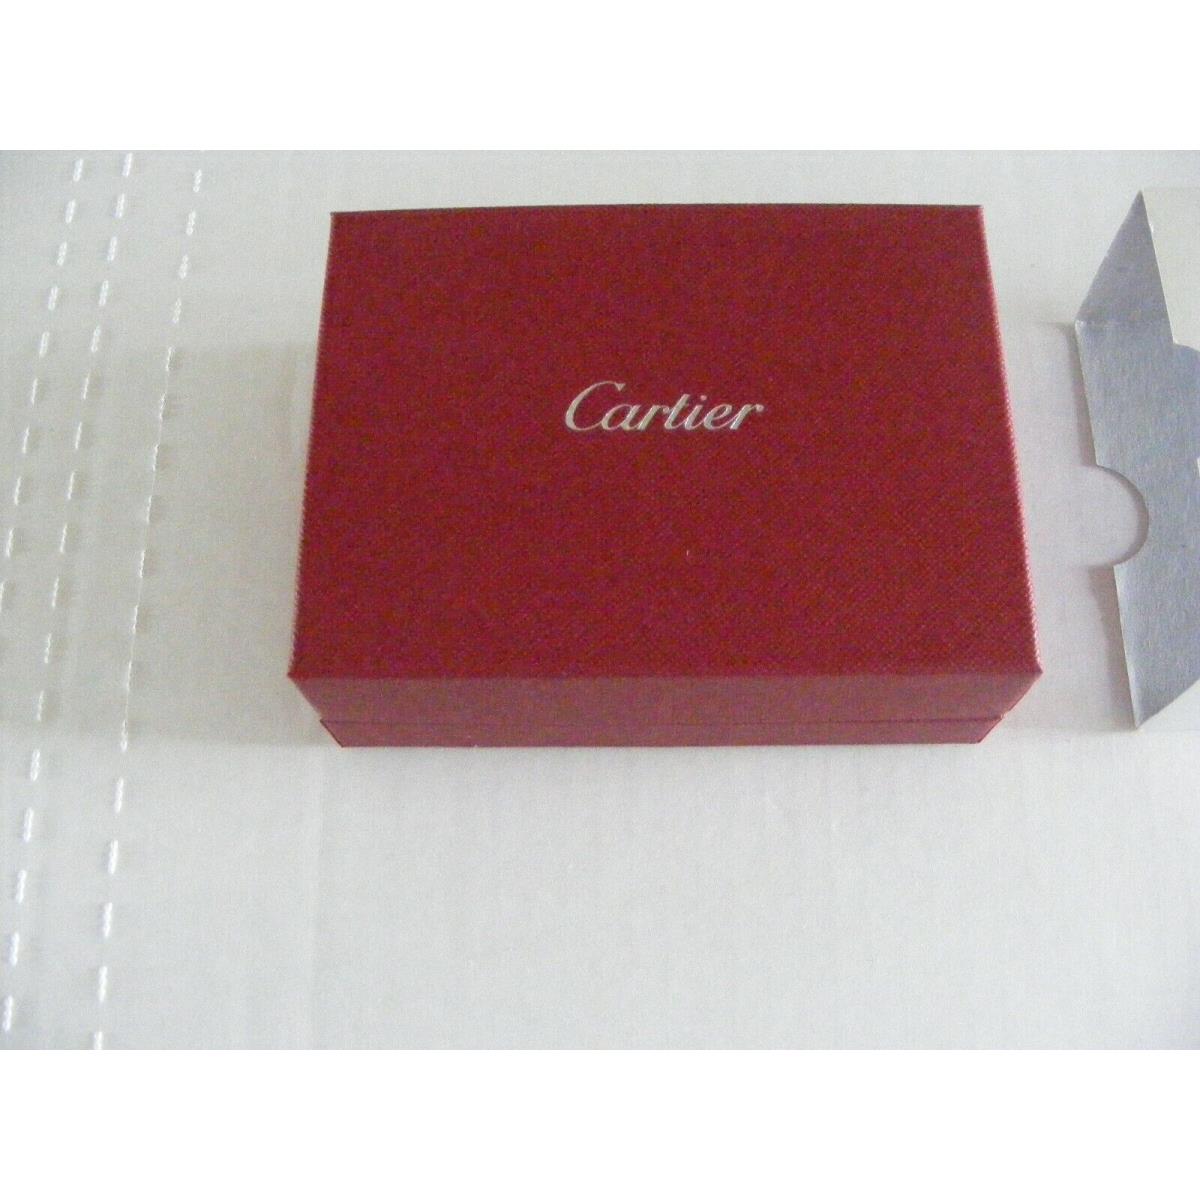 Cartier Metal Watch Bracelet Cleaning Kit